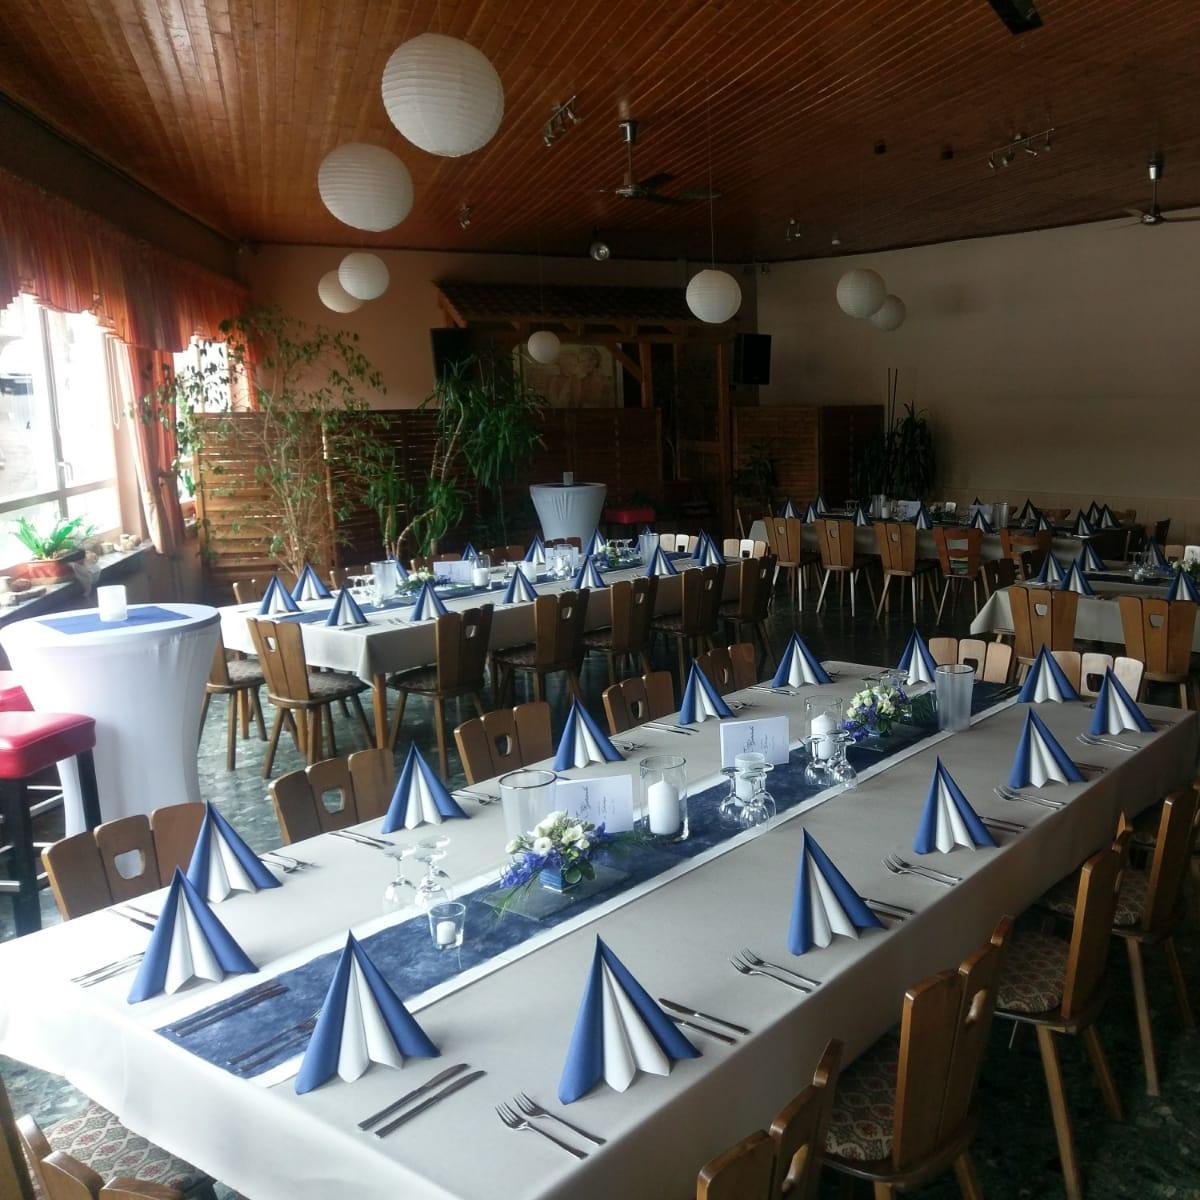 Restaurant "Gasthof zum Taunus" in Selters (Taunus)